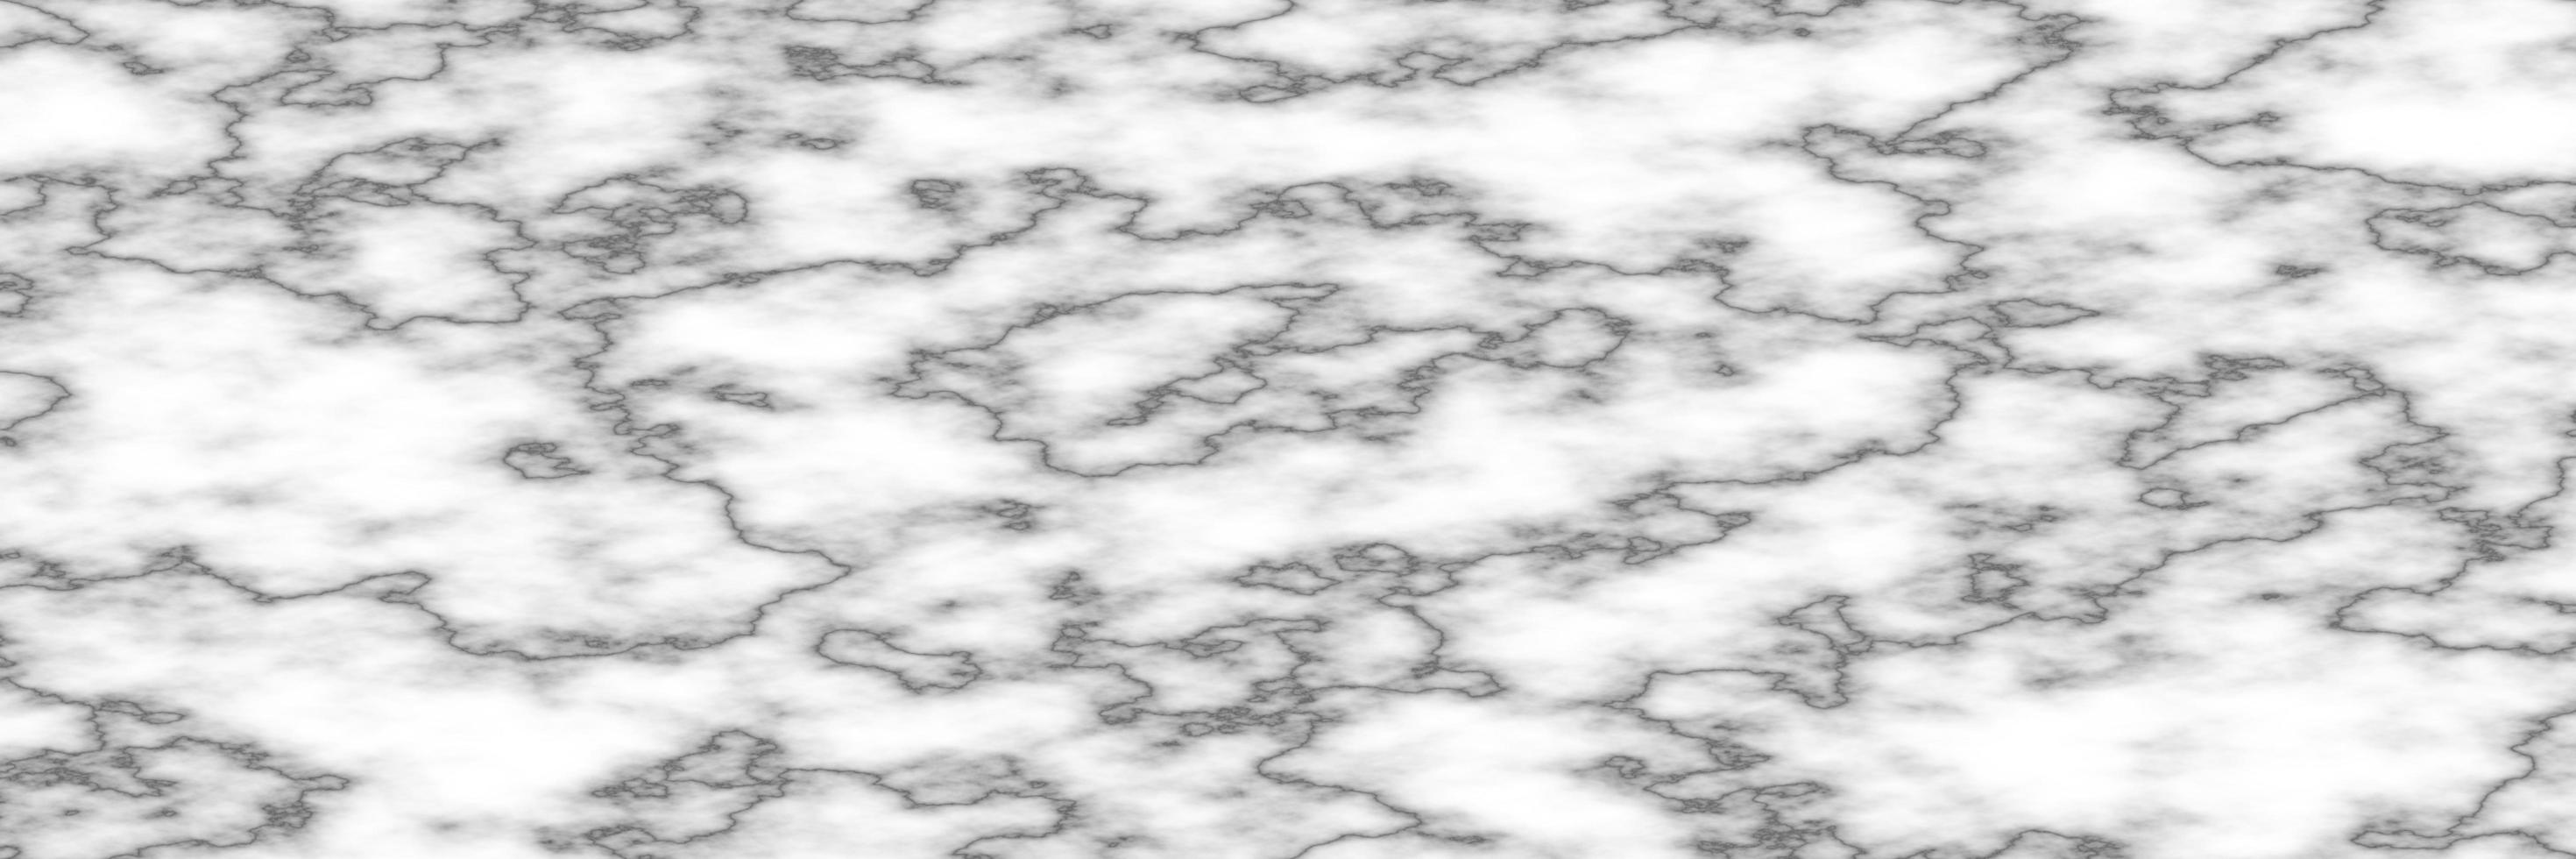 superfície de fundo branco em mármore, papel de parede de textura de mármore foto